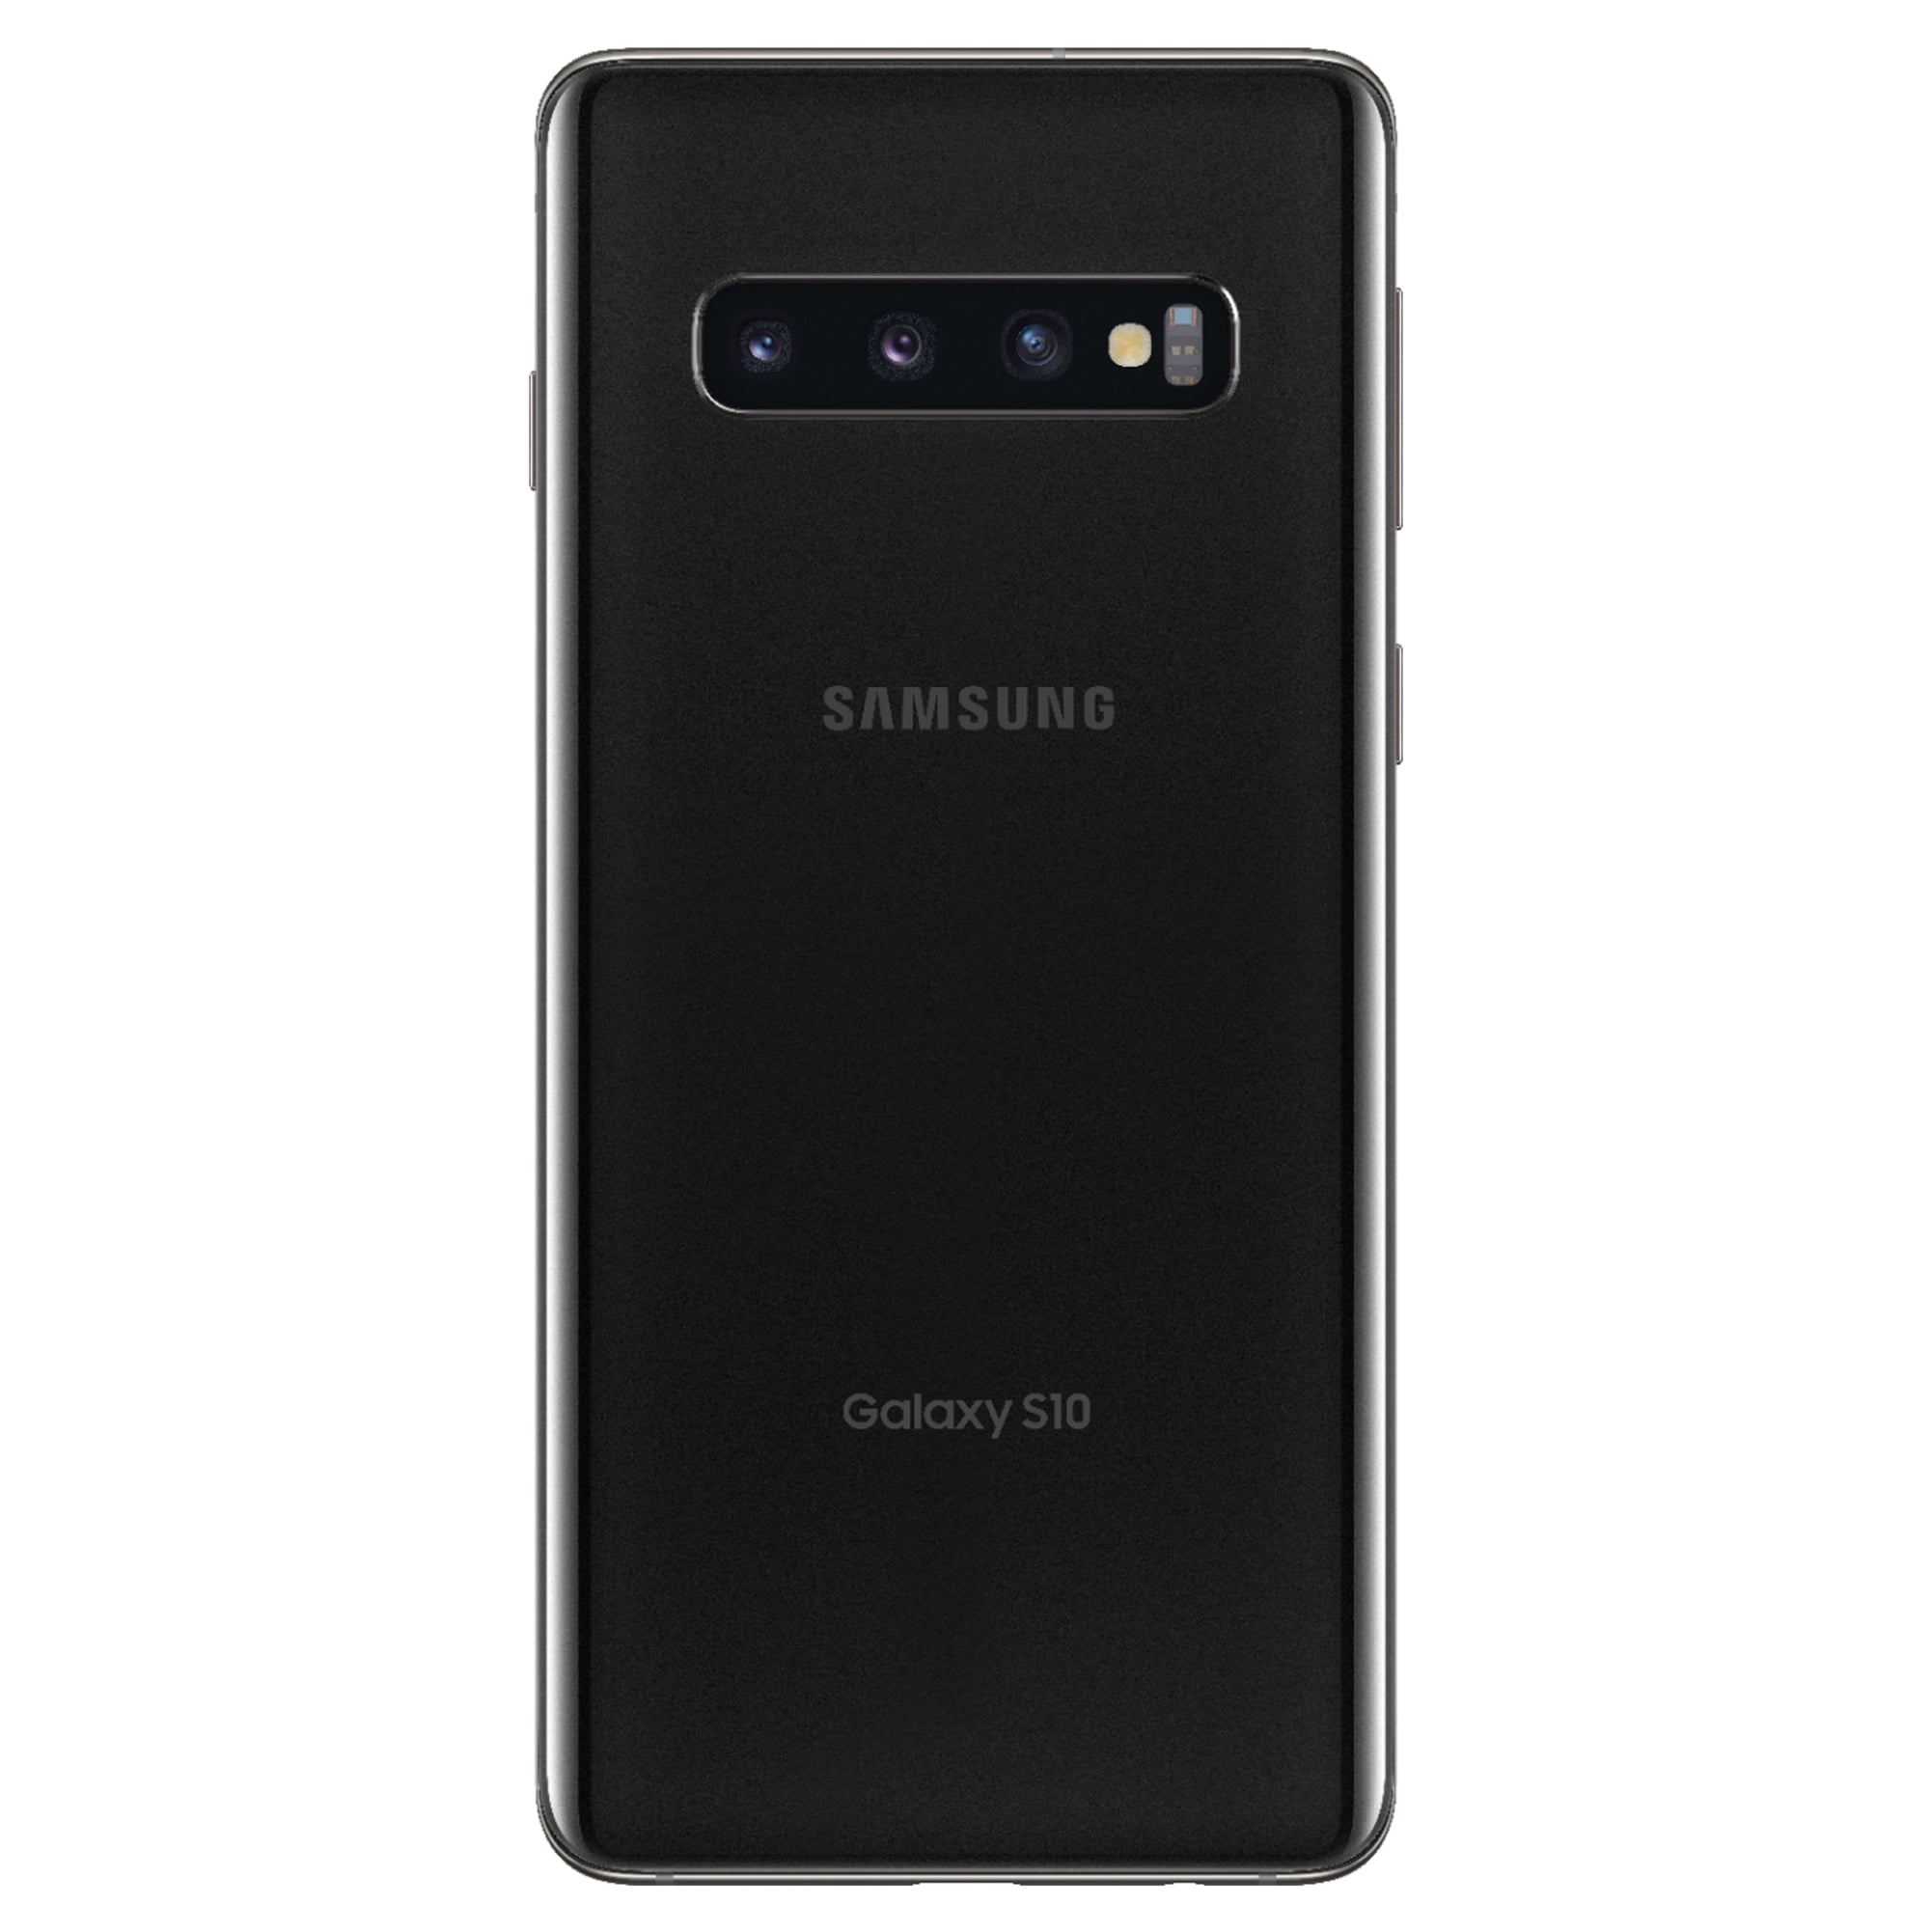 Galaxy S10 Prism Black 128 GB au-